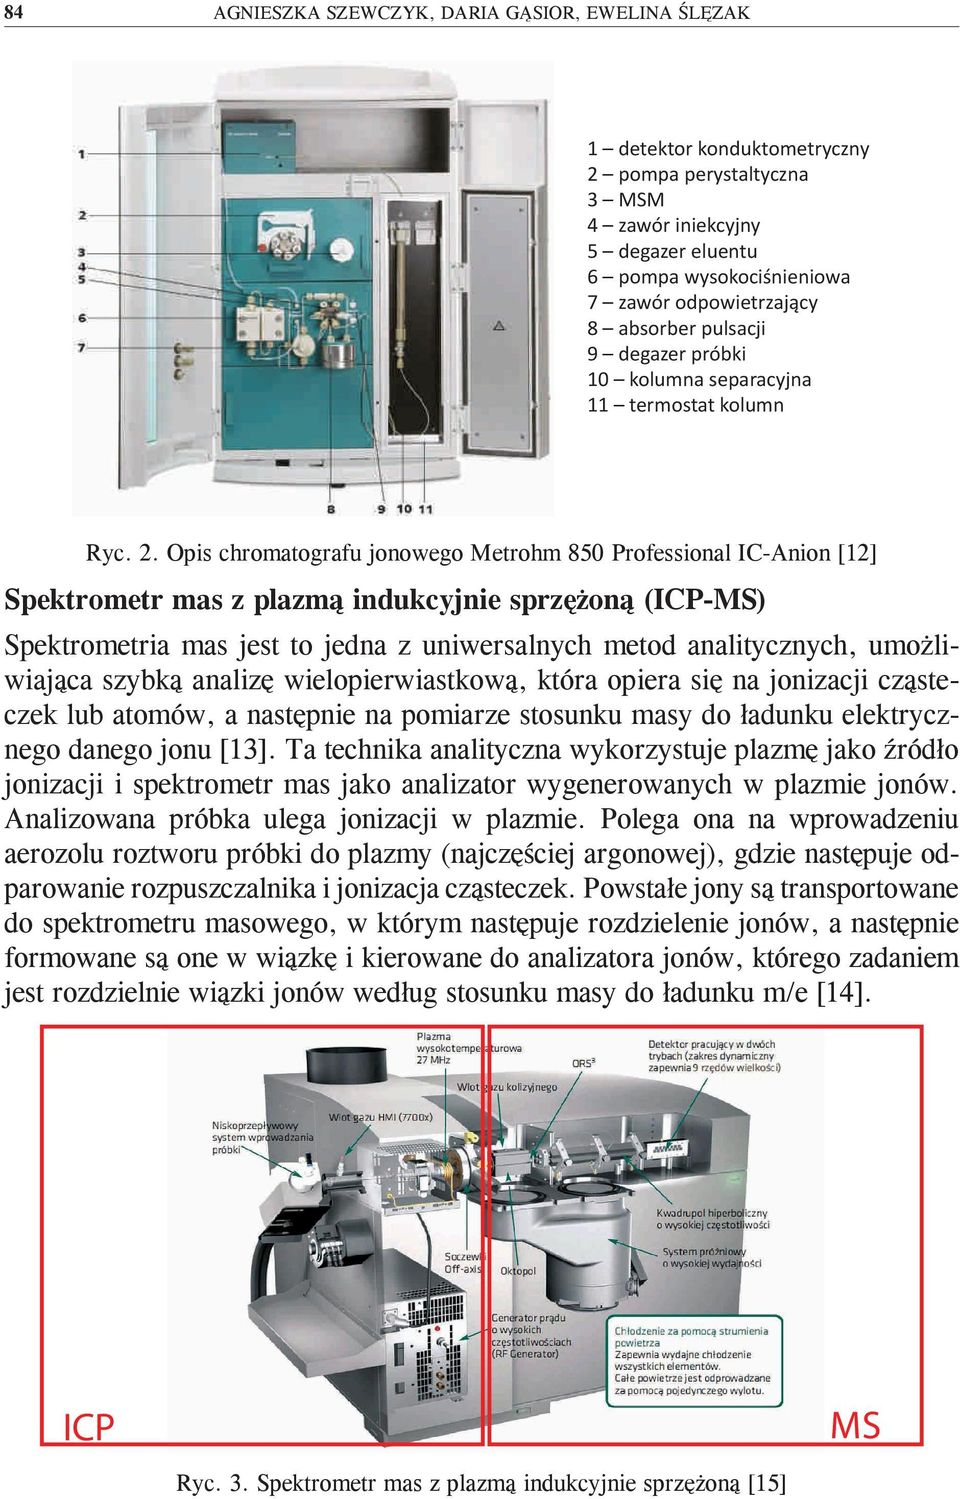 Opis chromatografu jonowego Metrohm 850 Professional IC-Anion [12] Spektrometr mas z plazmą indukcyjnie sprzężoną (ICP-MS) Spektrometria mas jest to jedna z uniwersalnych metod analitycznych,